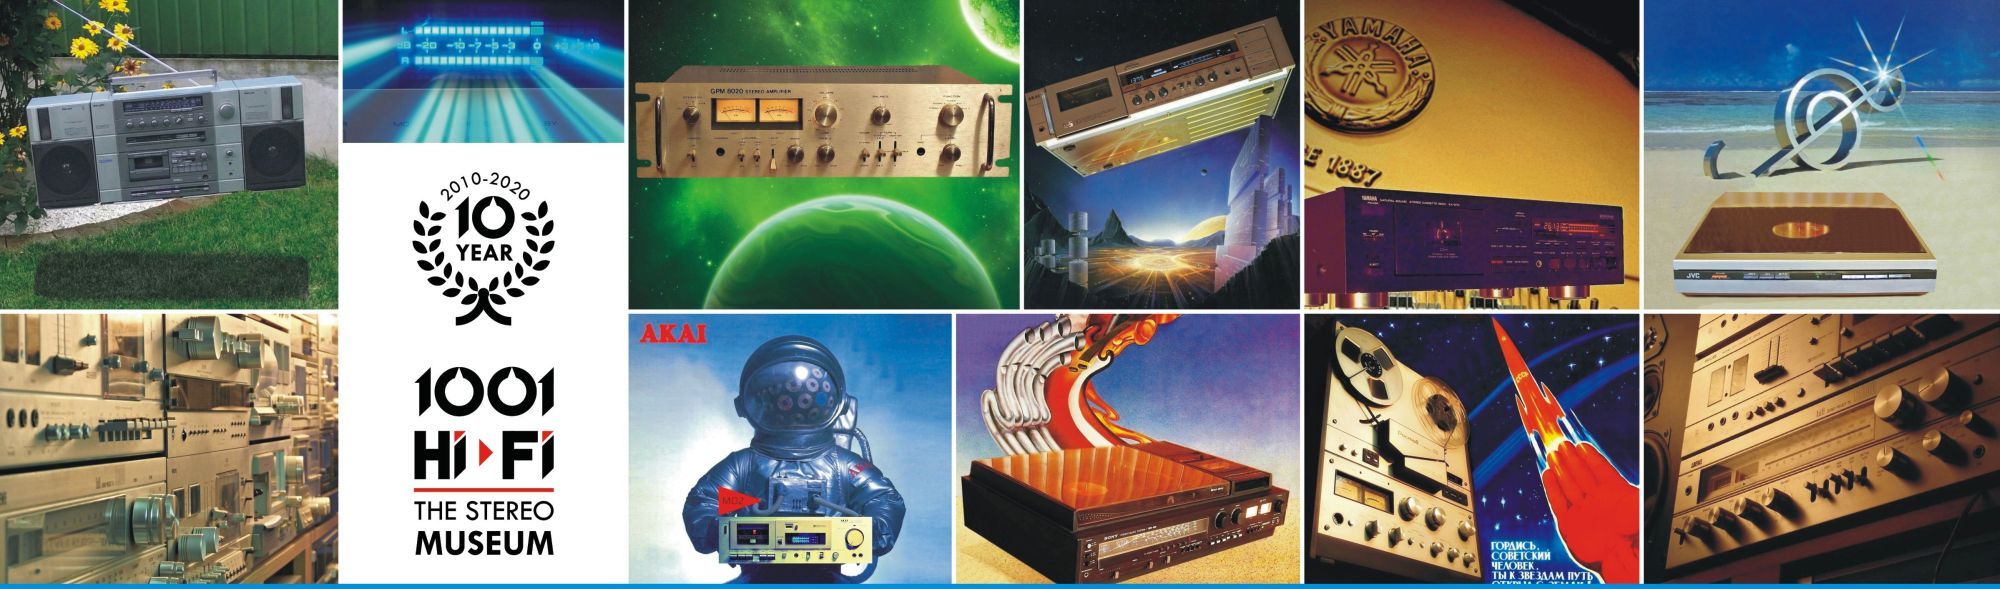 Vintage audio cassette deck collection 